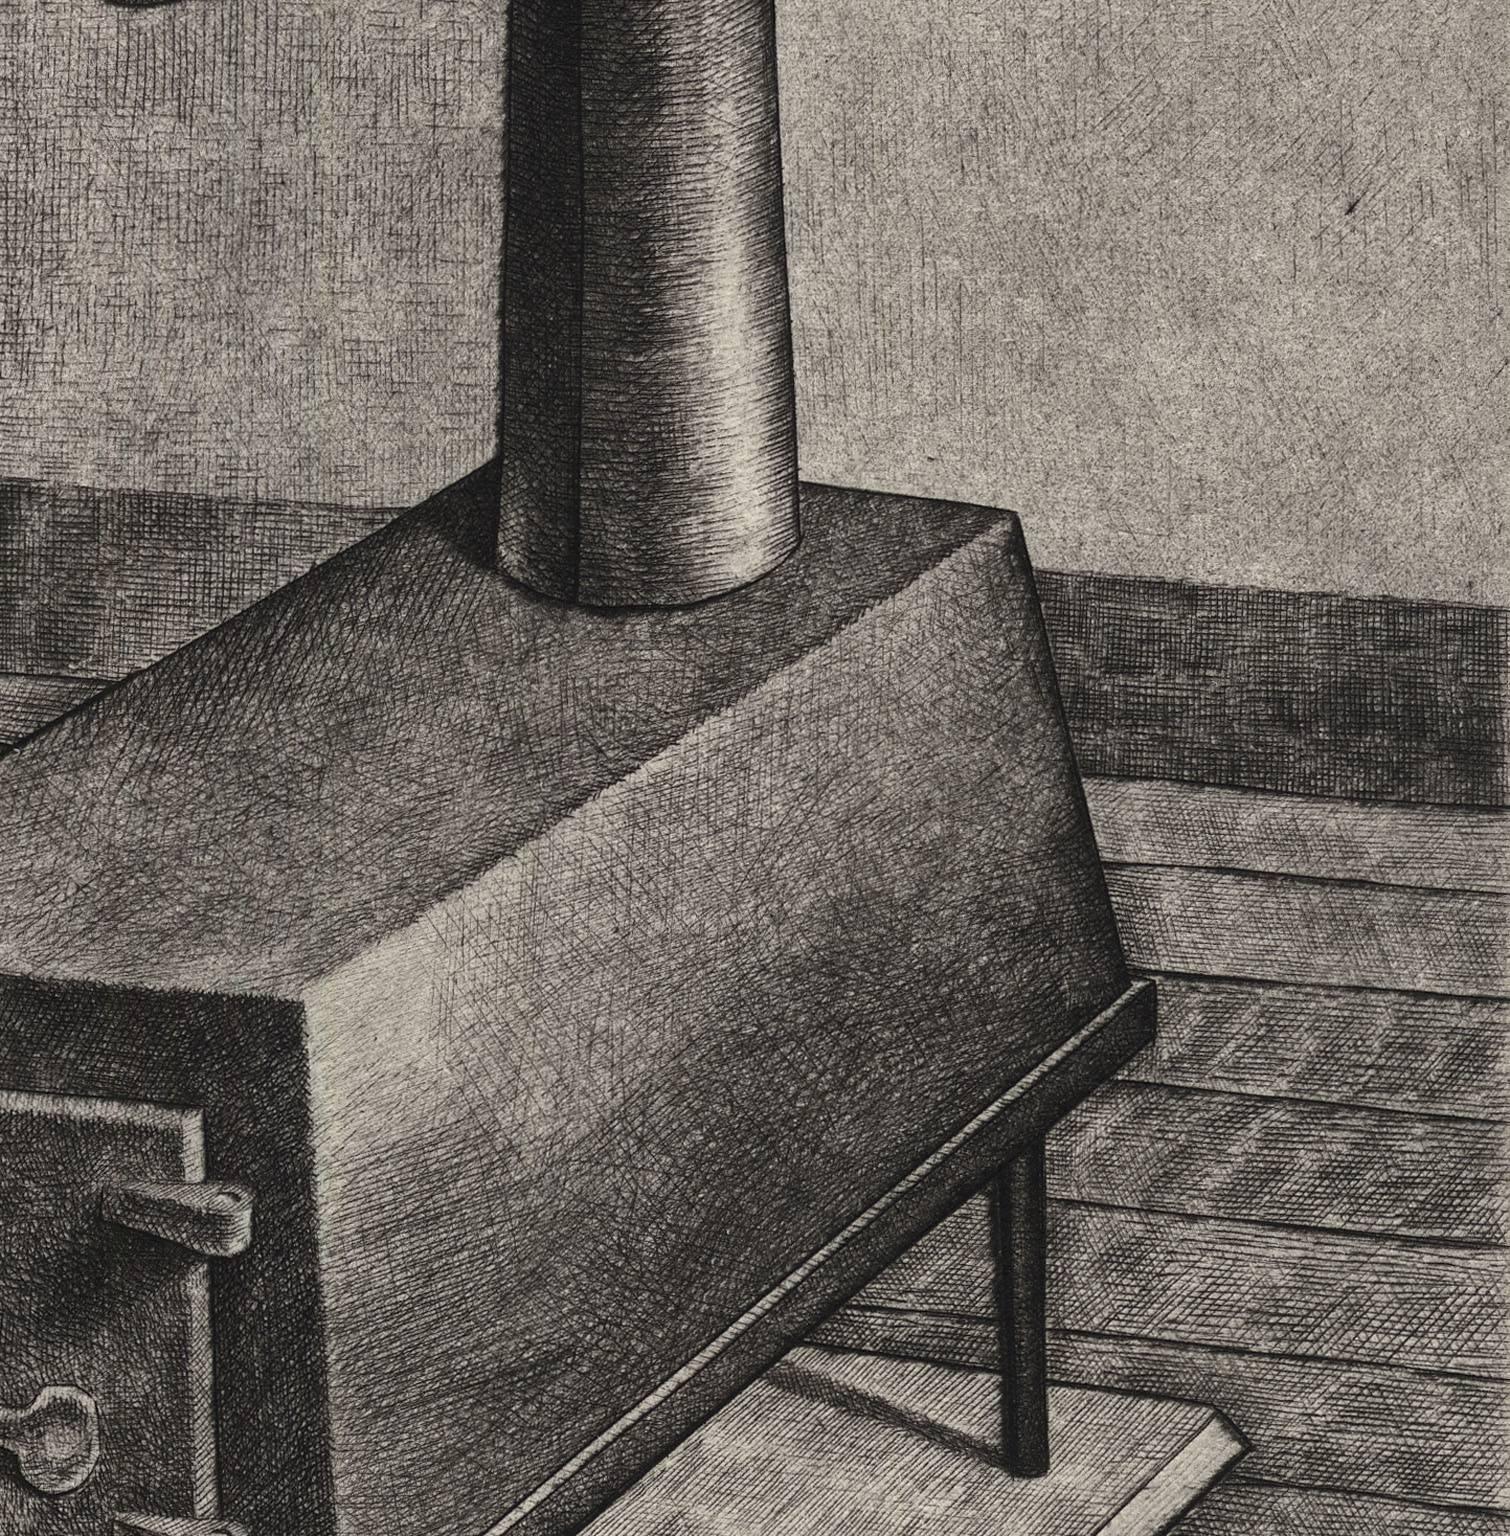 Armin Landeck schuf diese Kaltnadelradierung im Jahr 1938 in einer Auflage von 100 Stück.  Die Bildgröße beträgt 7 13/16 x 5 7/8